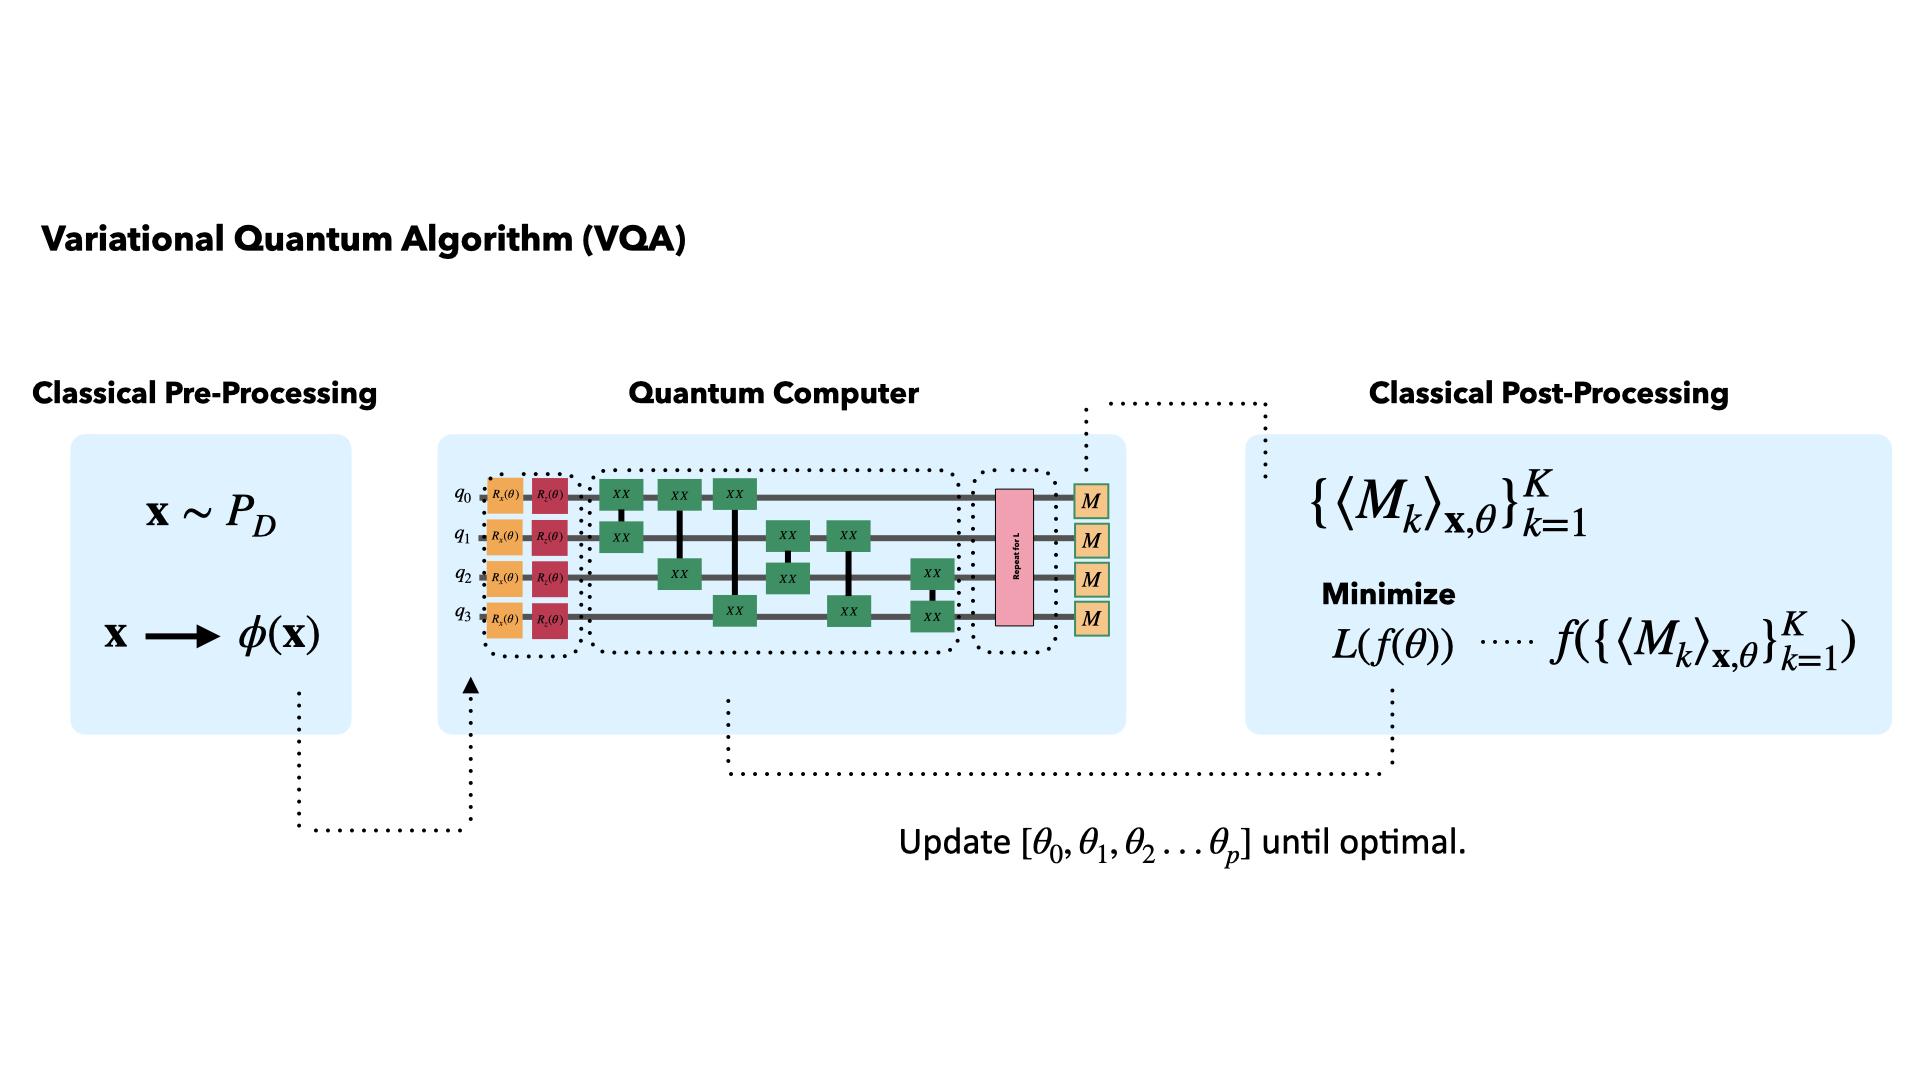 Diagram of Variational Quantum Algorithm (VQA)